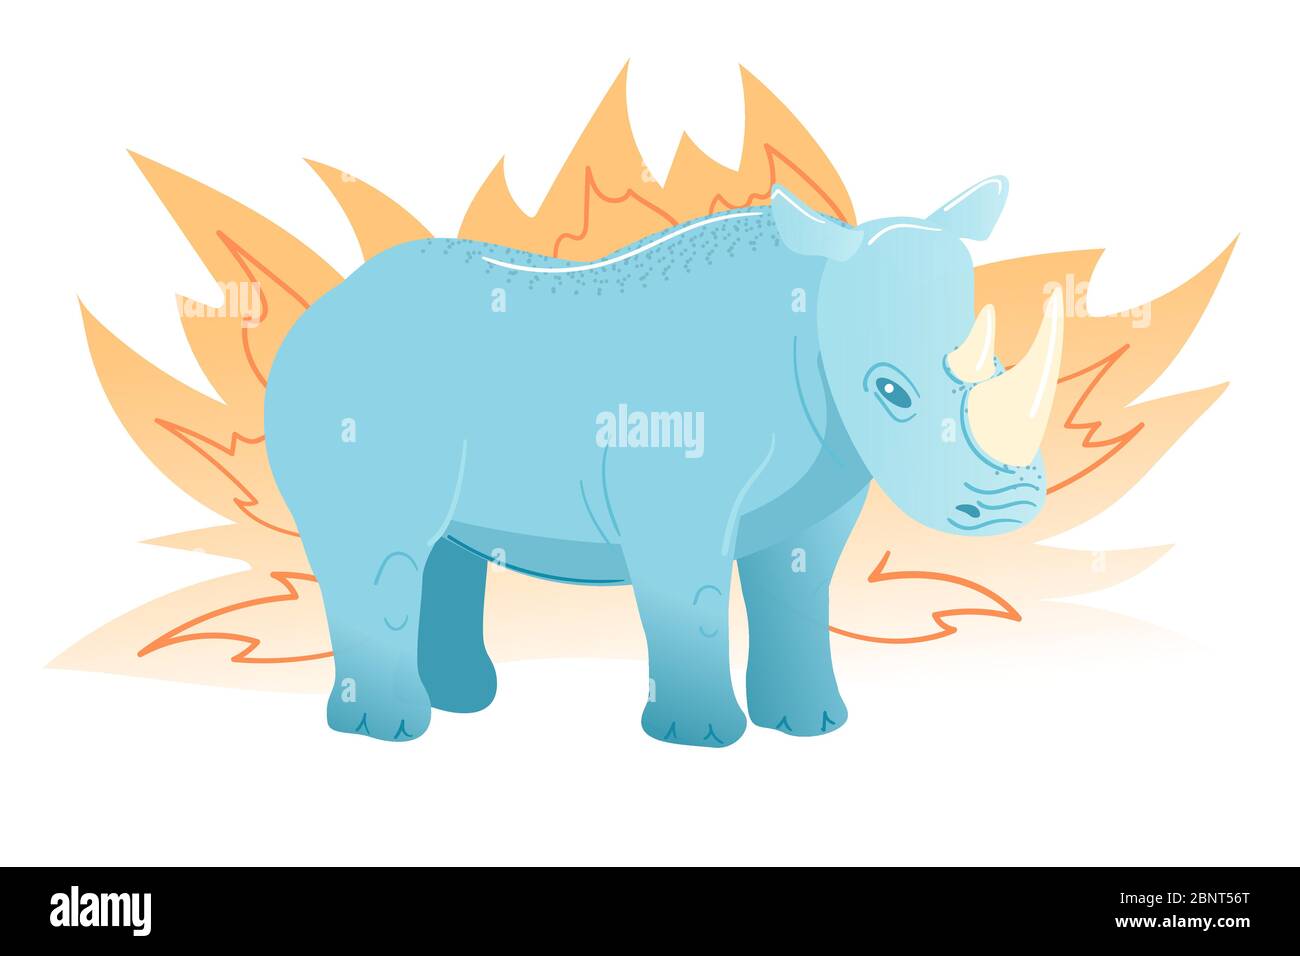 Cartolina Rhinoceros in stile piatto su sfondo bianco. Personaggio blu di Cartoon. Disegno acuto di mammifero africano. Rhino in giallo bush illustrazione vettoriale. Biglietto d'auguri zoo bambini isolato clipart. Illustrazione Vettoriale